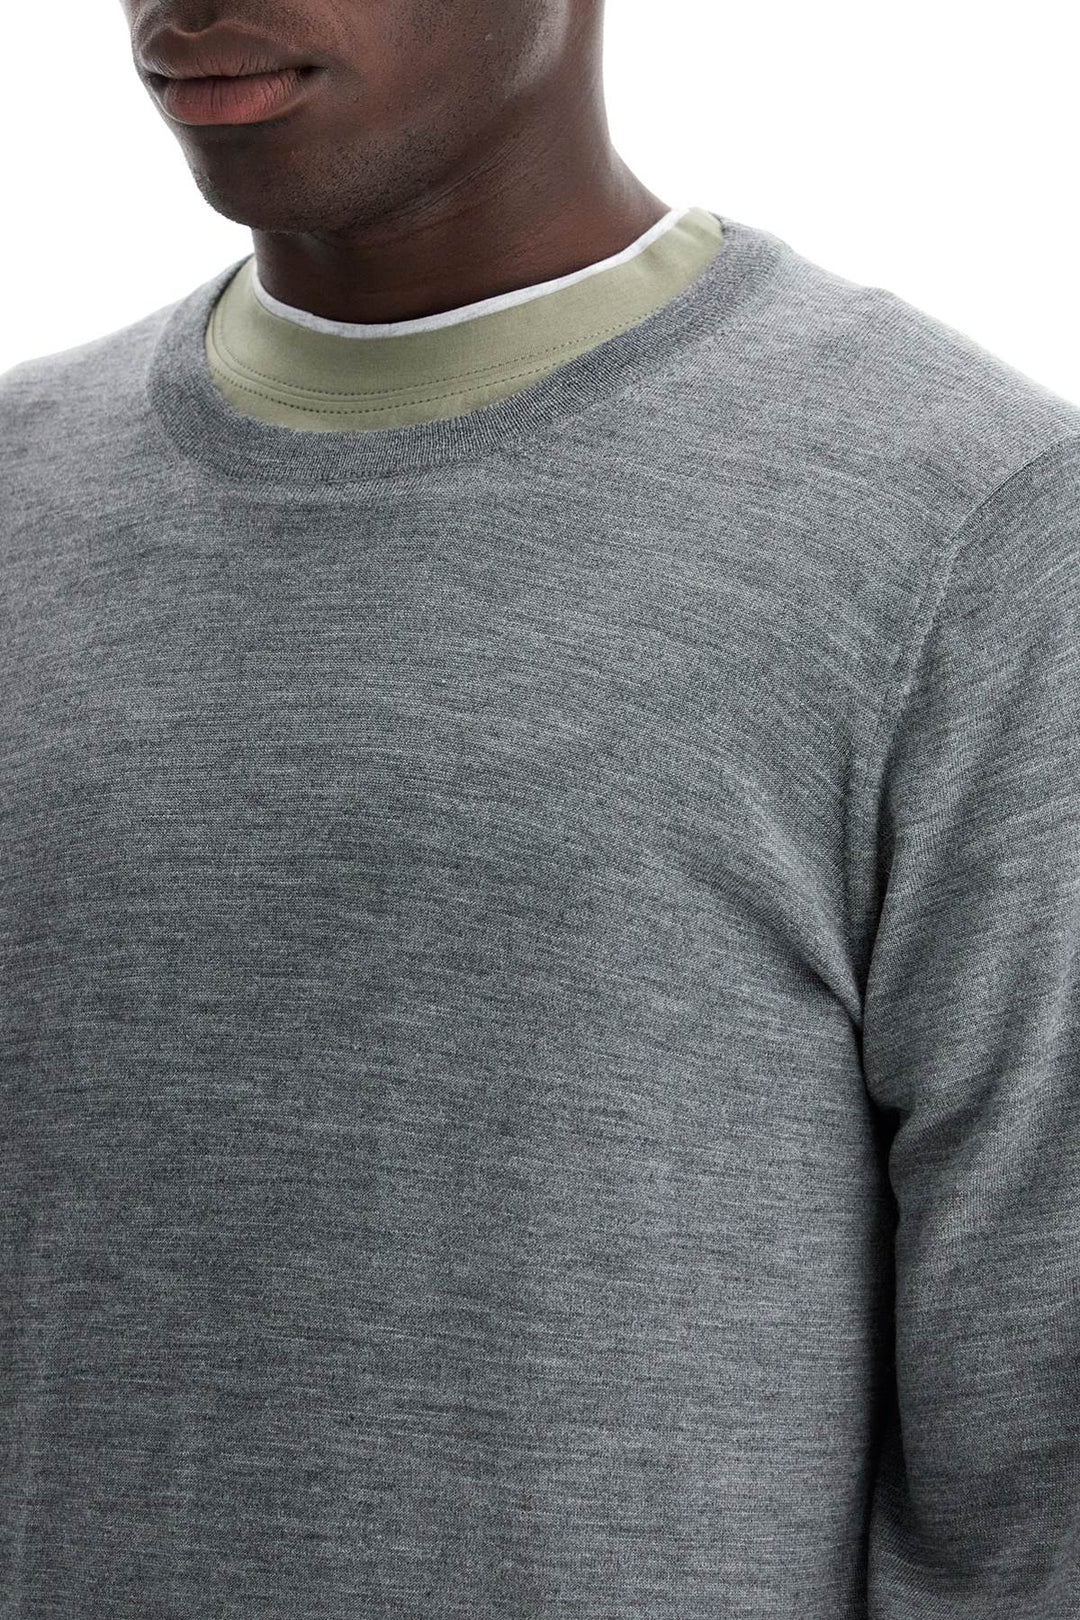 Brunello Cucinelli Fine Wool Cashmere Sweater   Grey